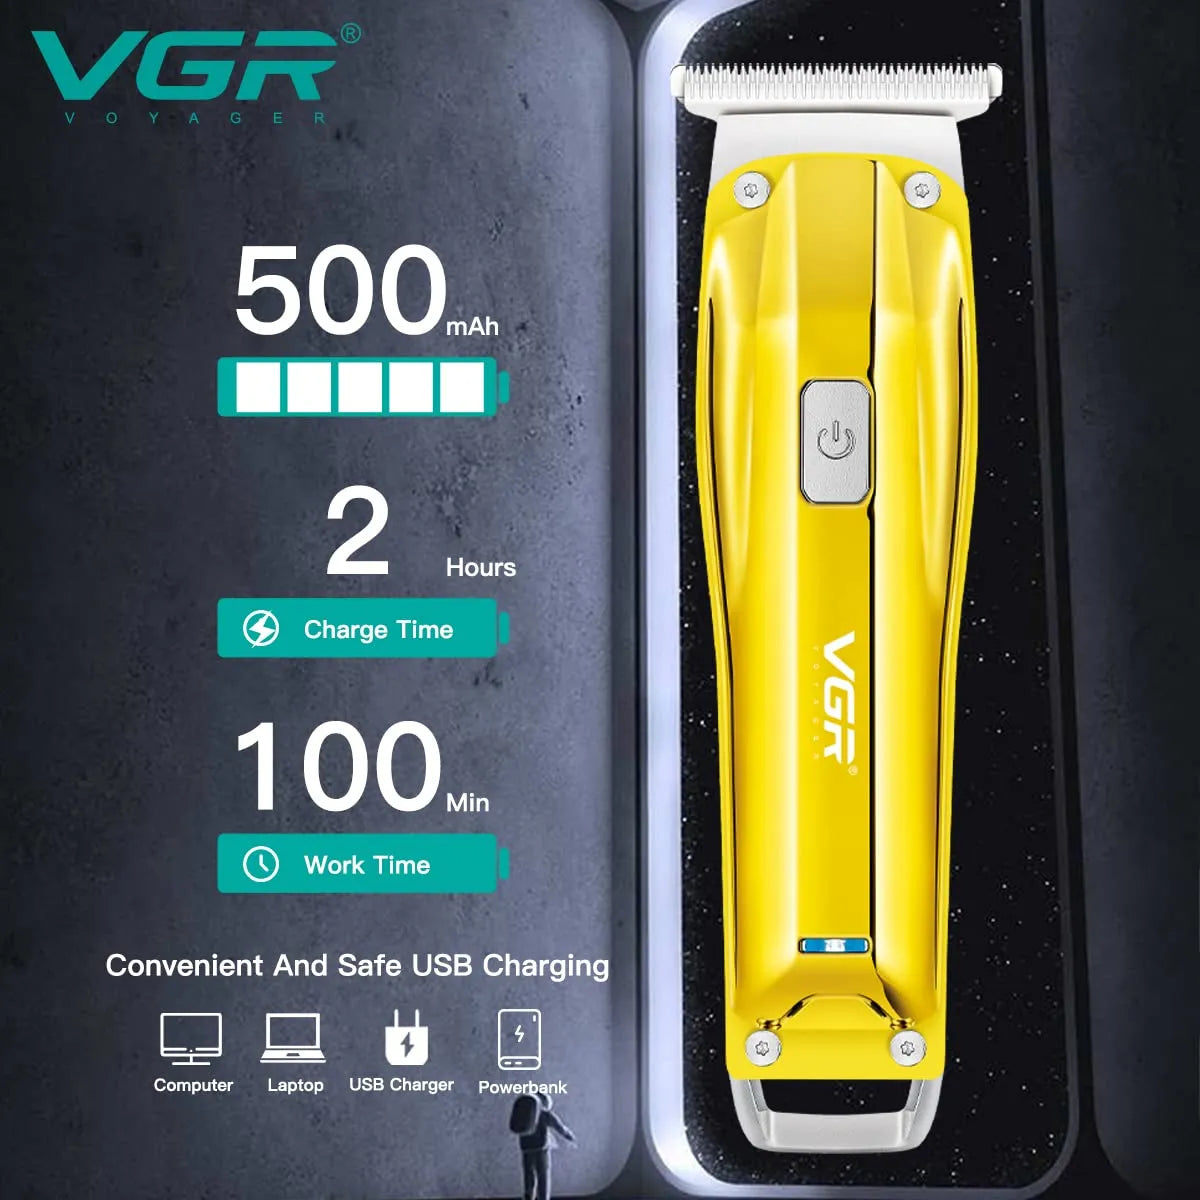 VGR, VGRindia, VGRofficial, VGR V-955